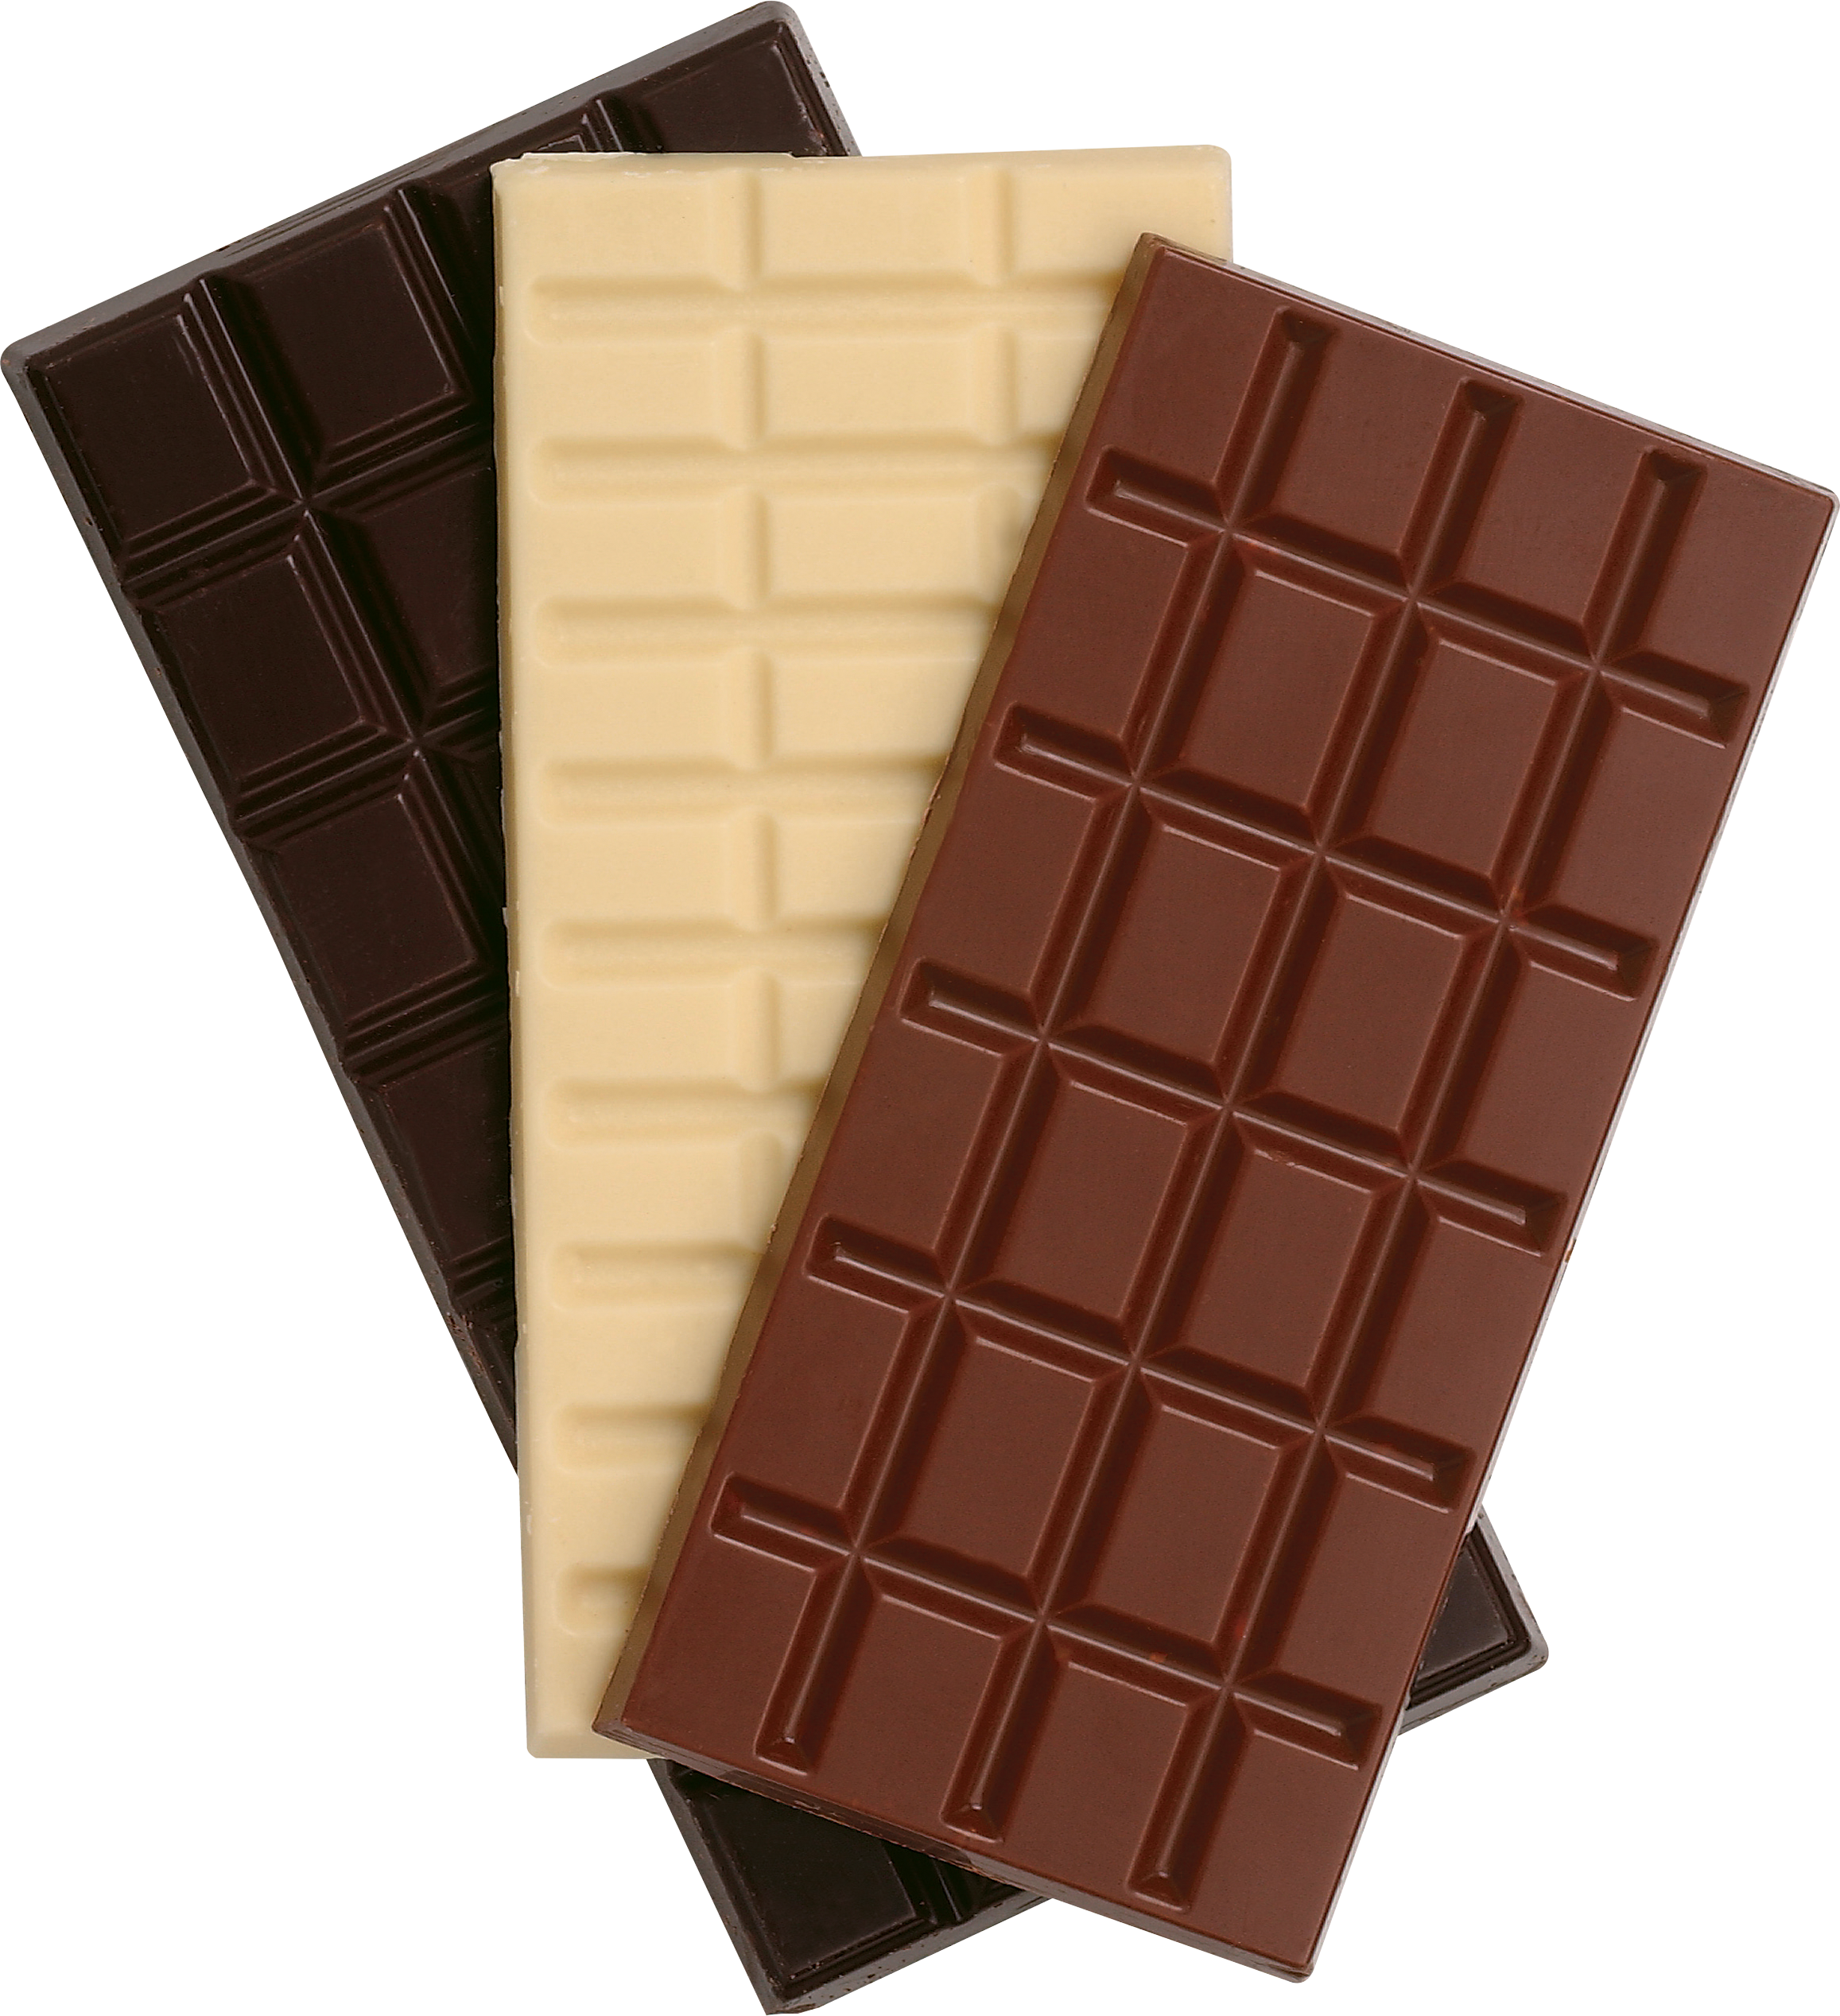 चॉकलेट